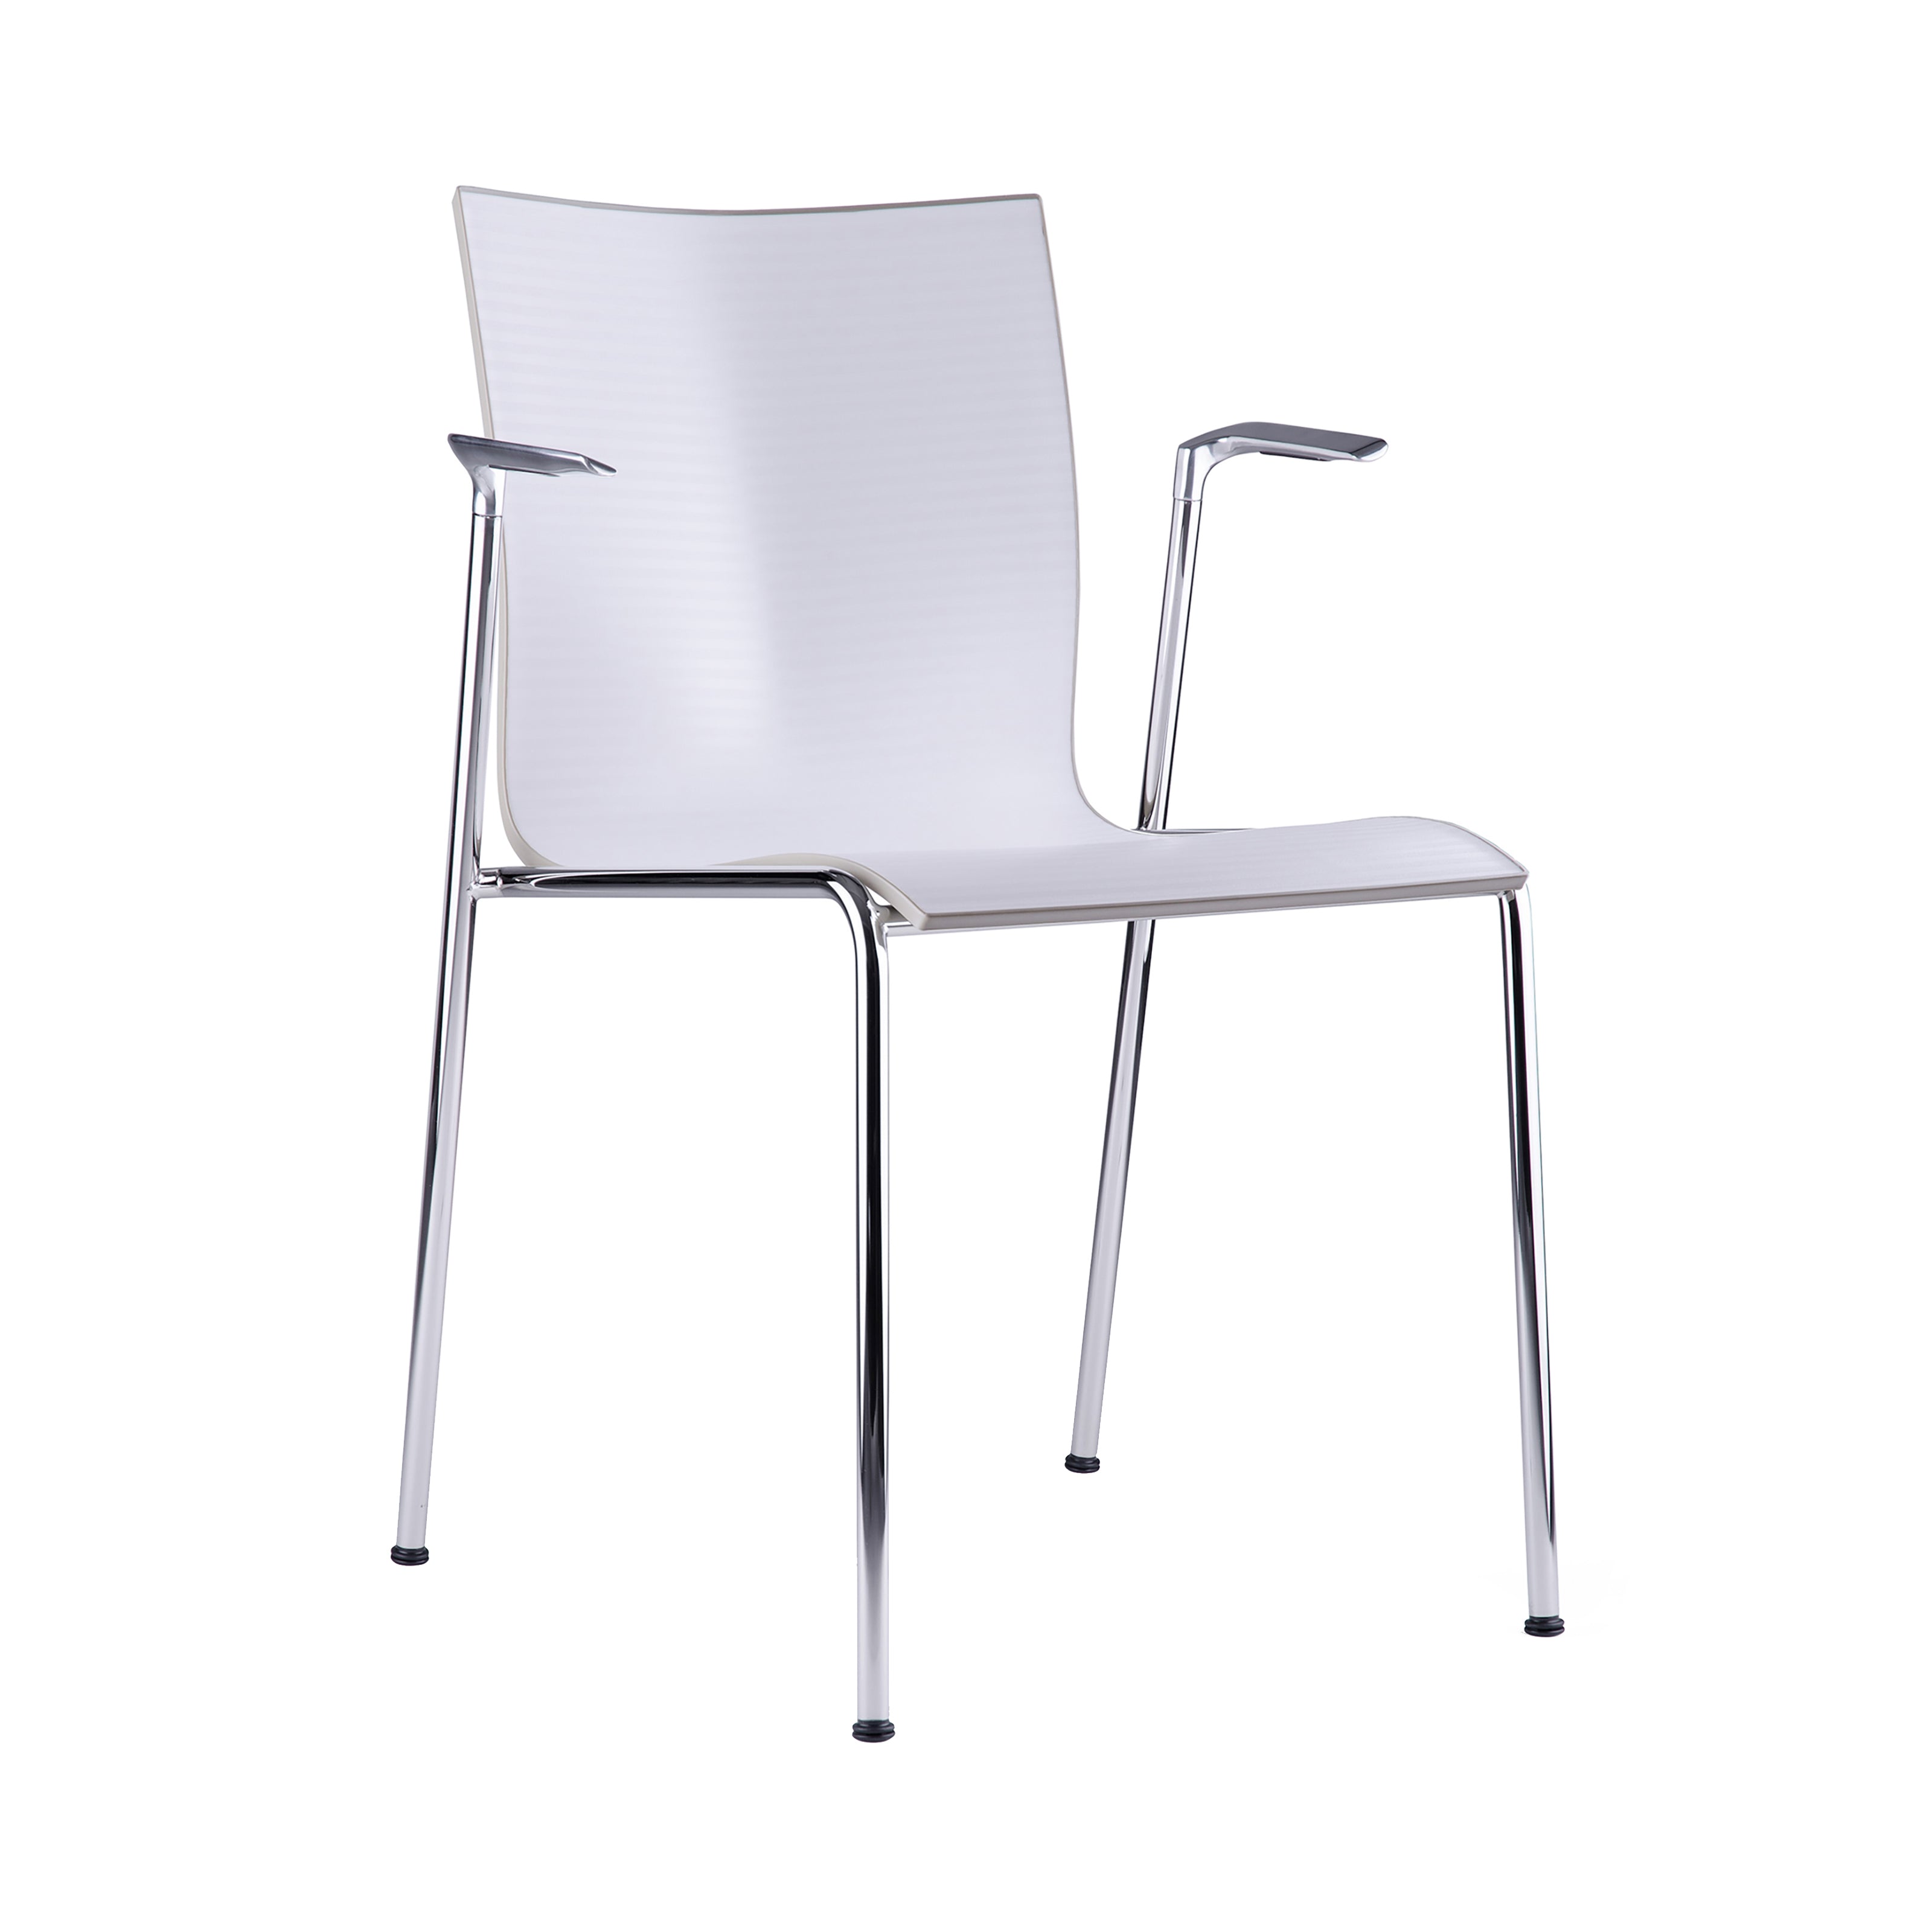 Chairik XL 123 Armchair: 4-Legs + Plastic + White